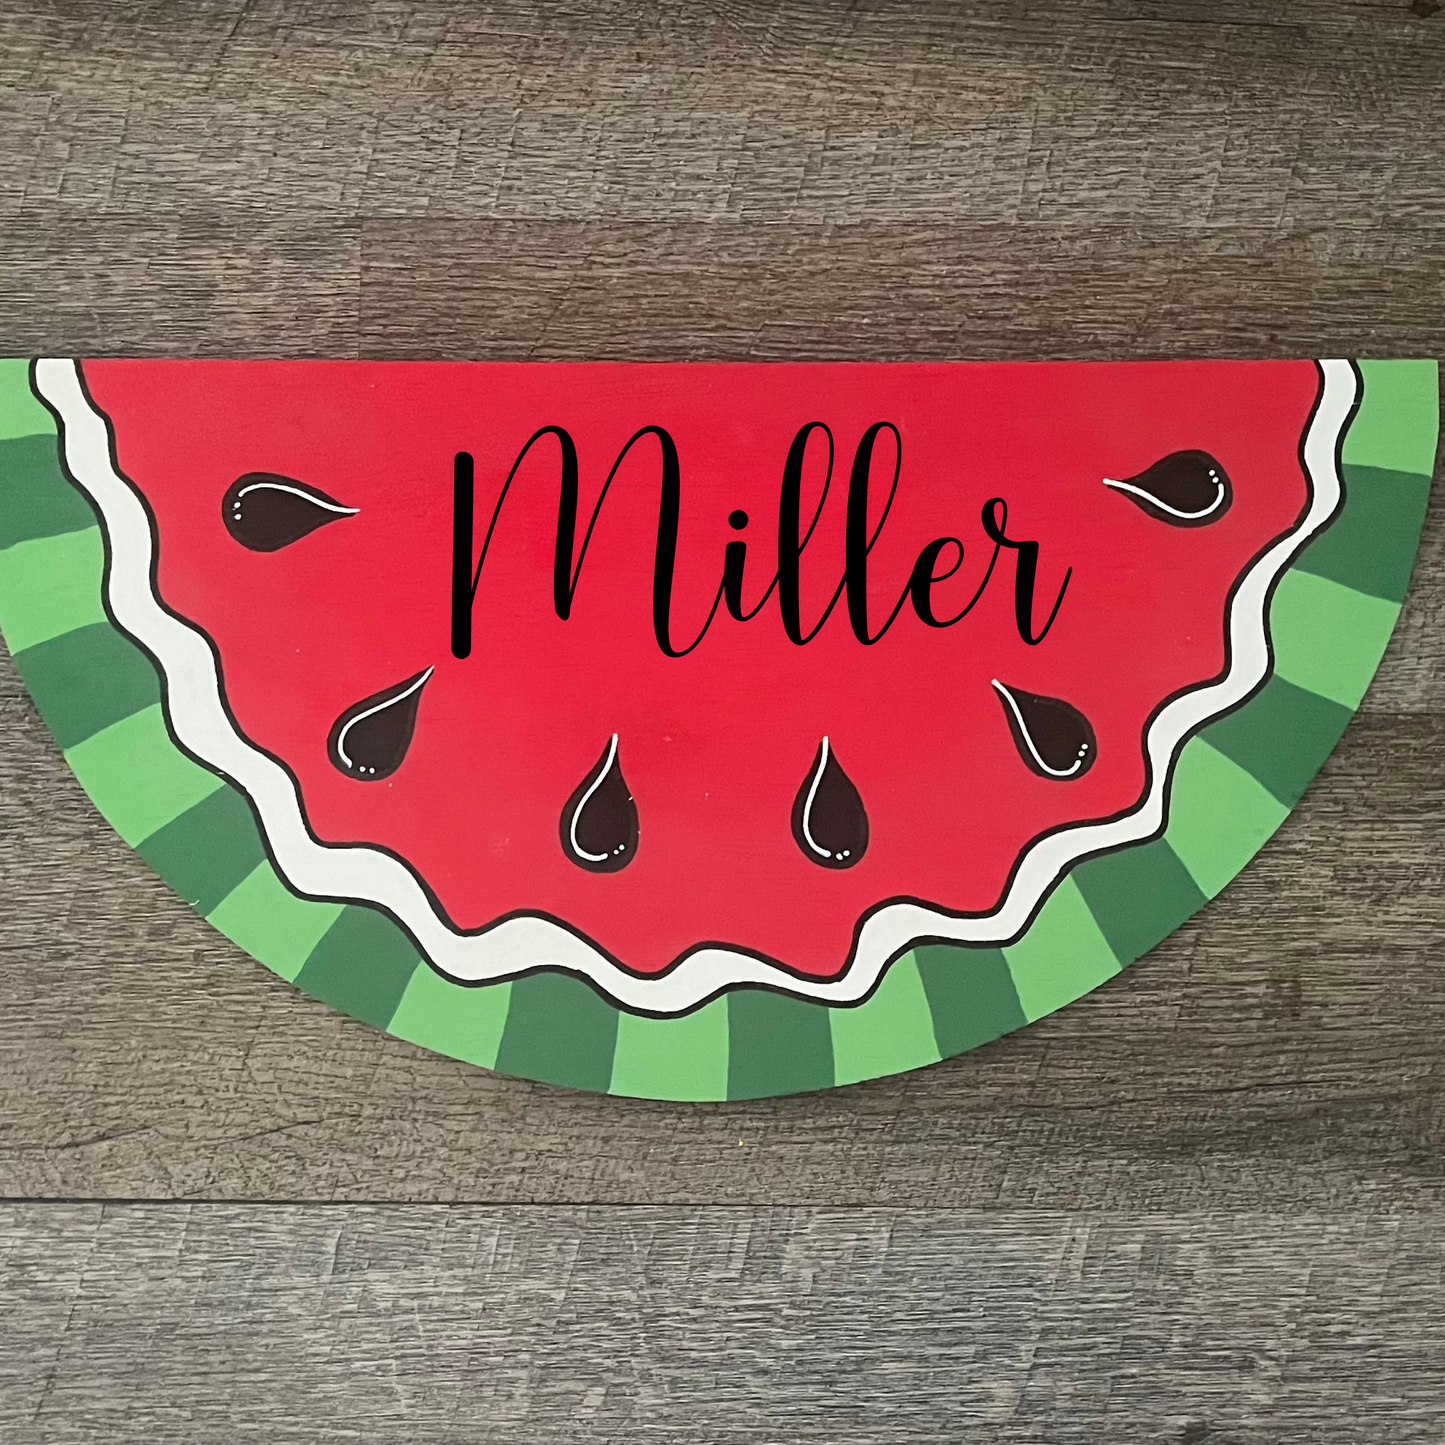 Watermelon Slice Wood Attachment / Door Hanger